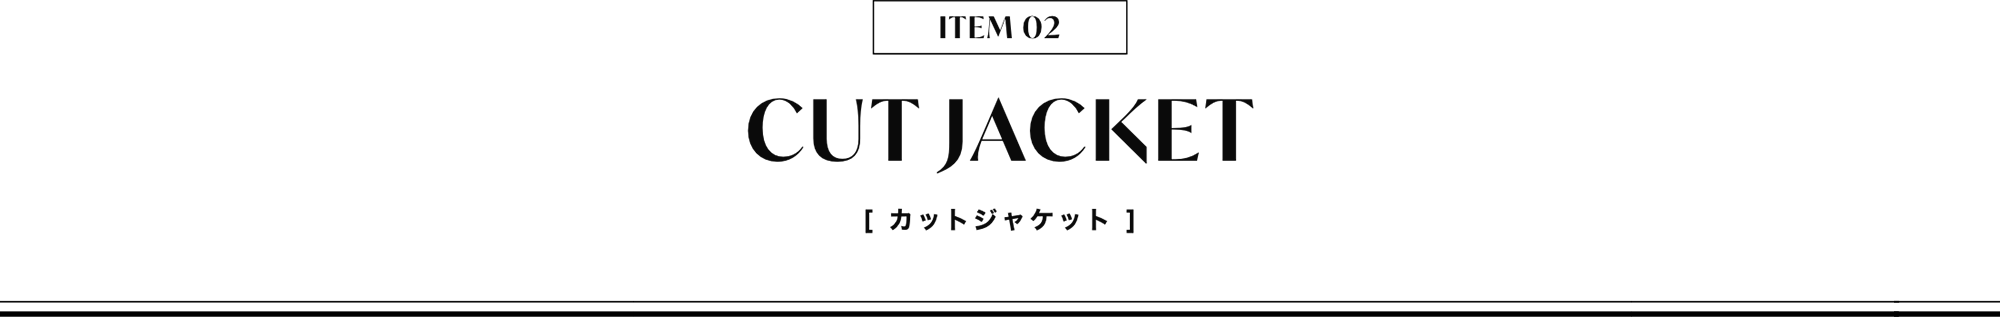 CUT JACKET